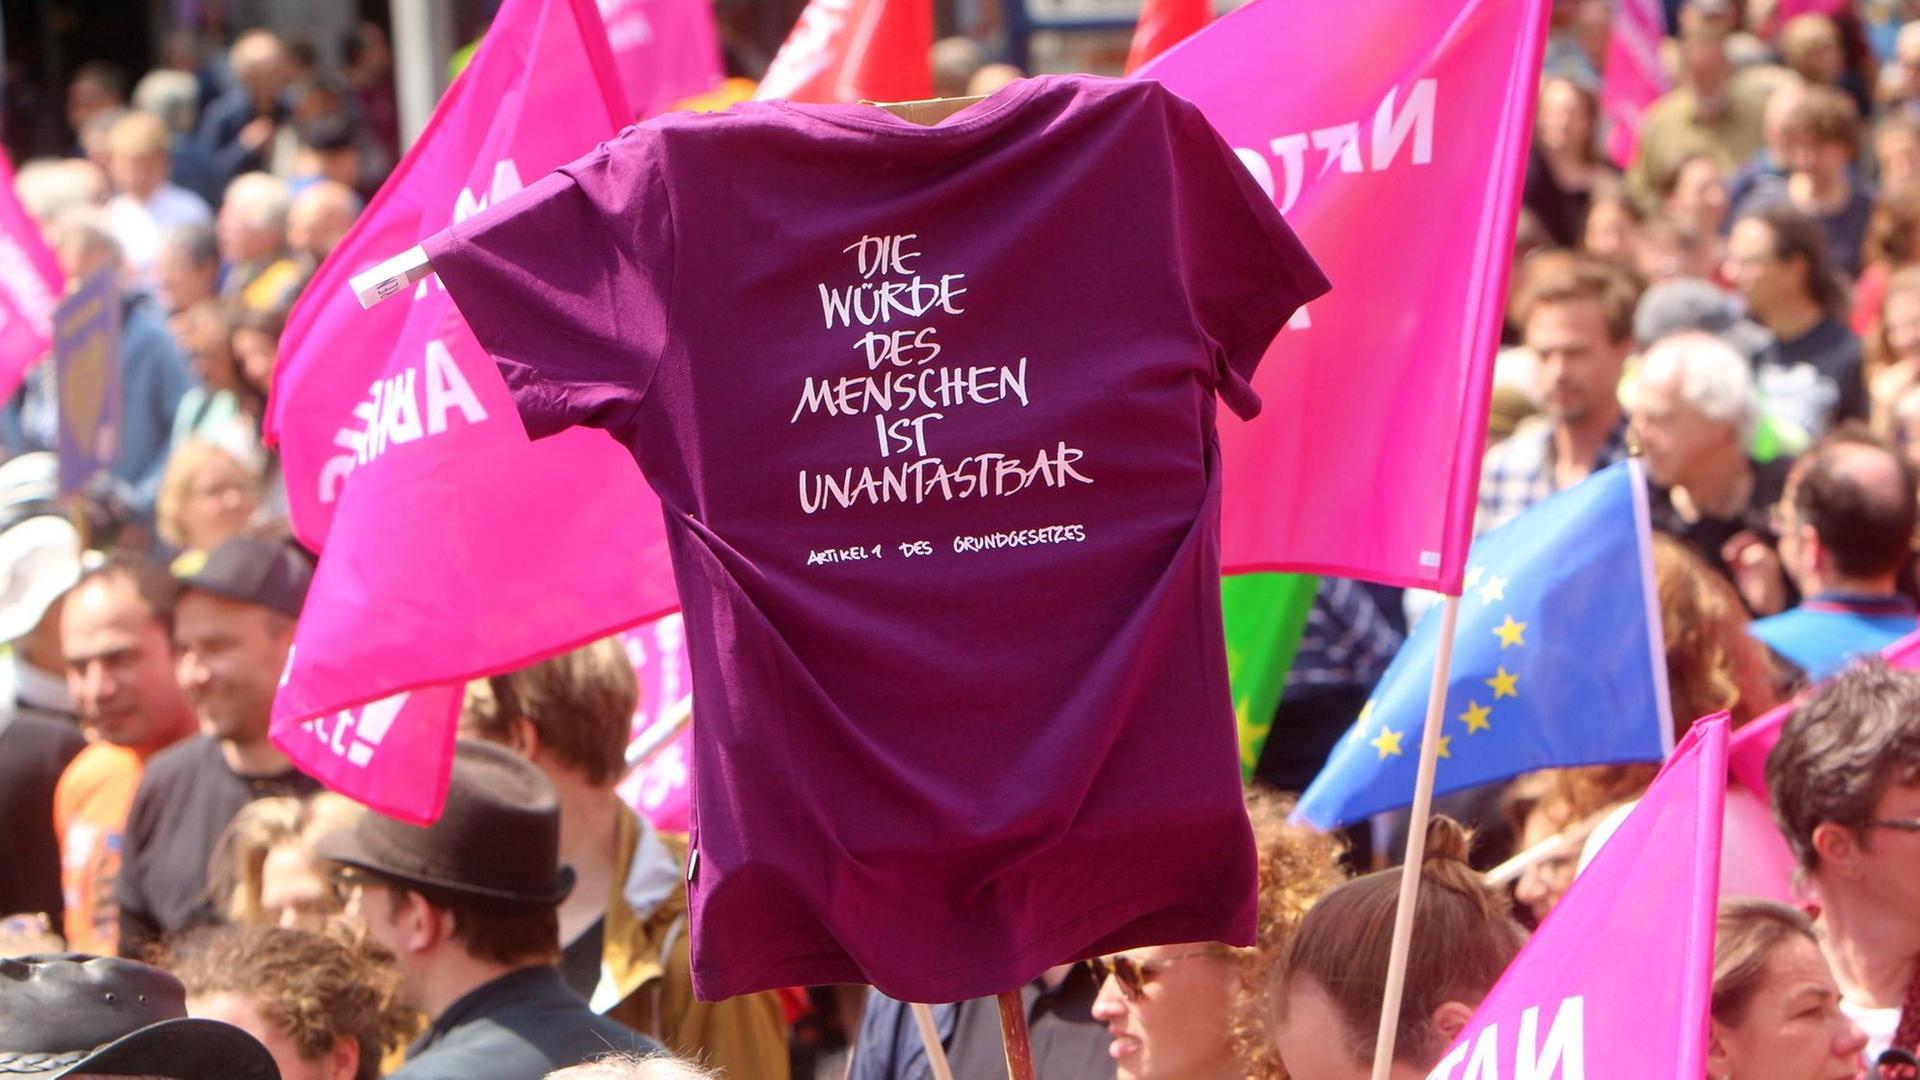 Das Bild zeigt eine Demonstration gegen Nationalismus in Stuttgart, auf der ein T-Shirt mit dem Aufdruck "Die Würde des Menschen ist unantastbar" hochgehalten wird.